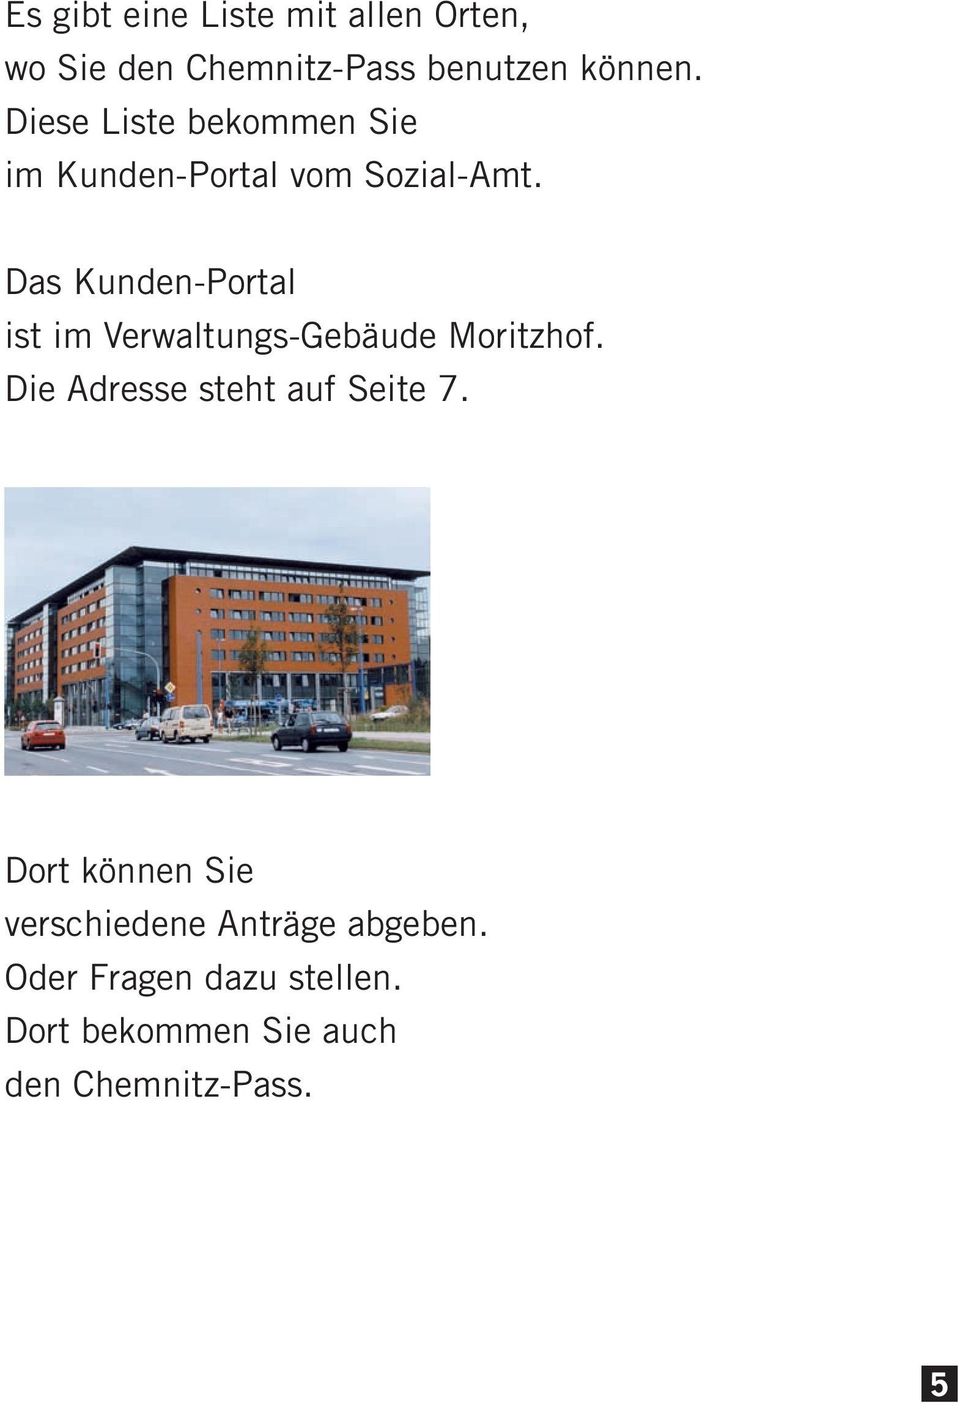 Das Kunden-Portal ist im Verwaltungs-Gebäude Moritzhof.